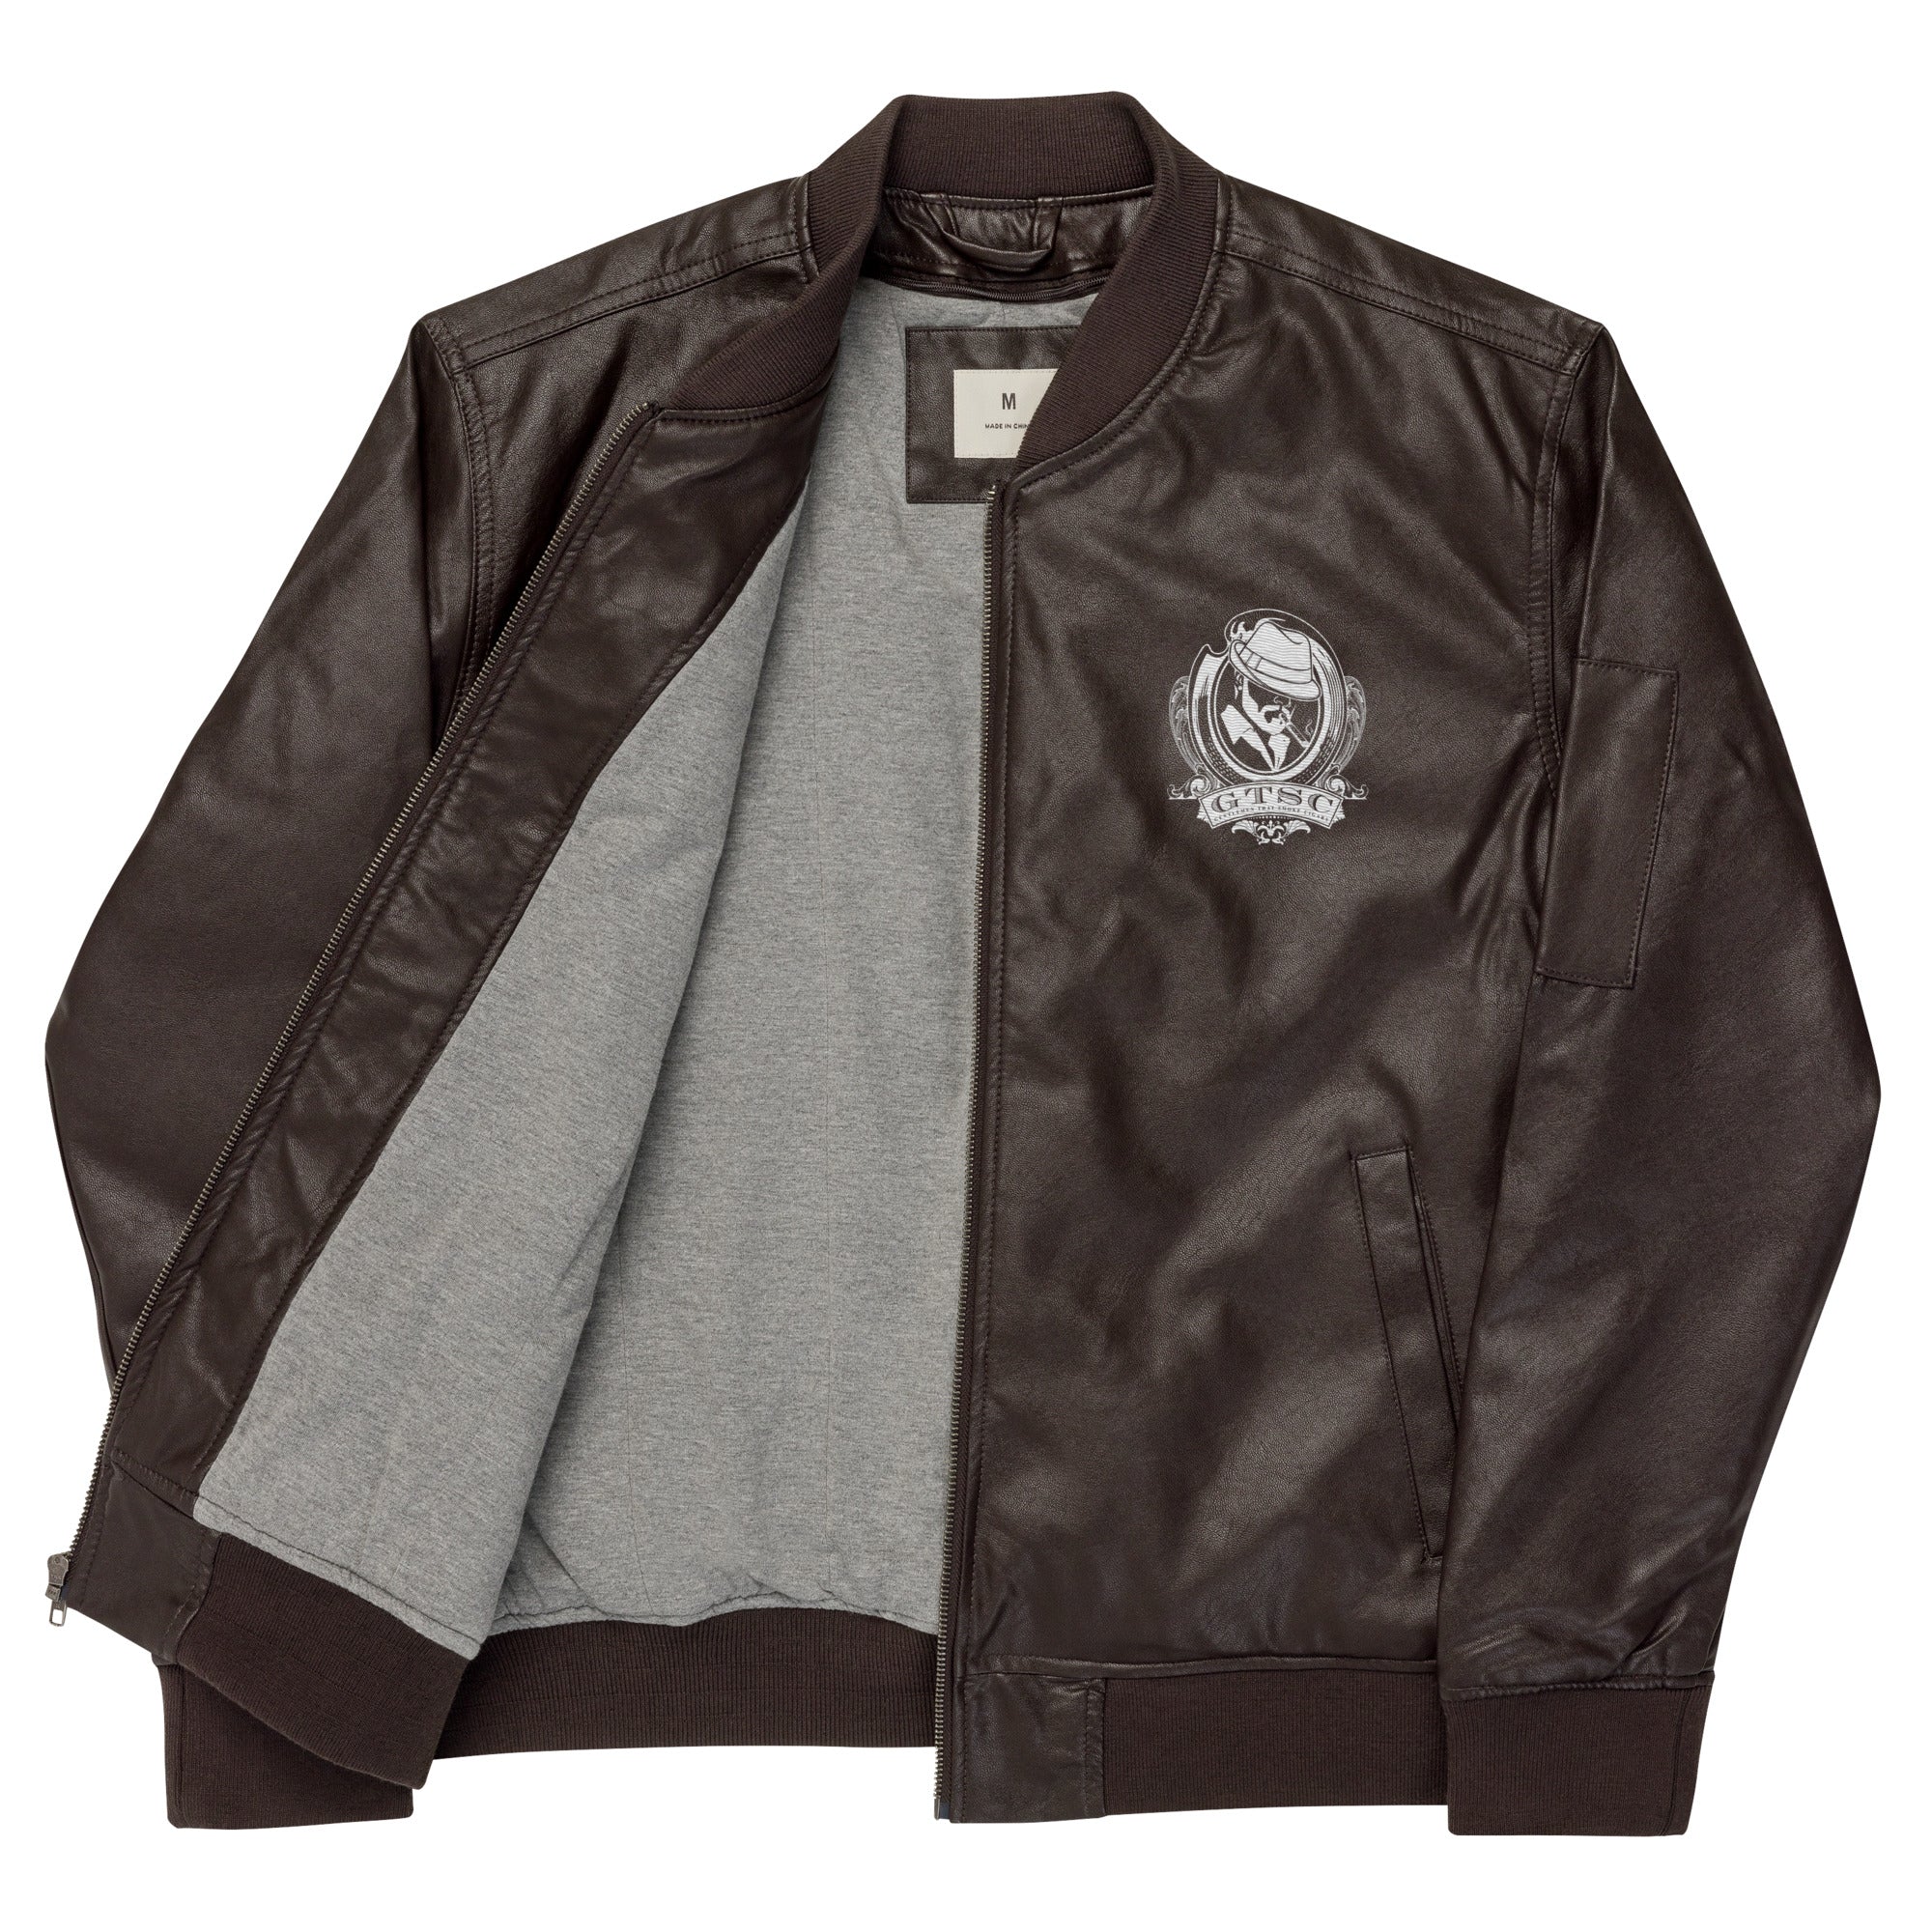 GTSC Leather Bomber Jacket